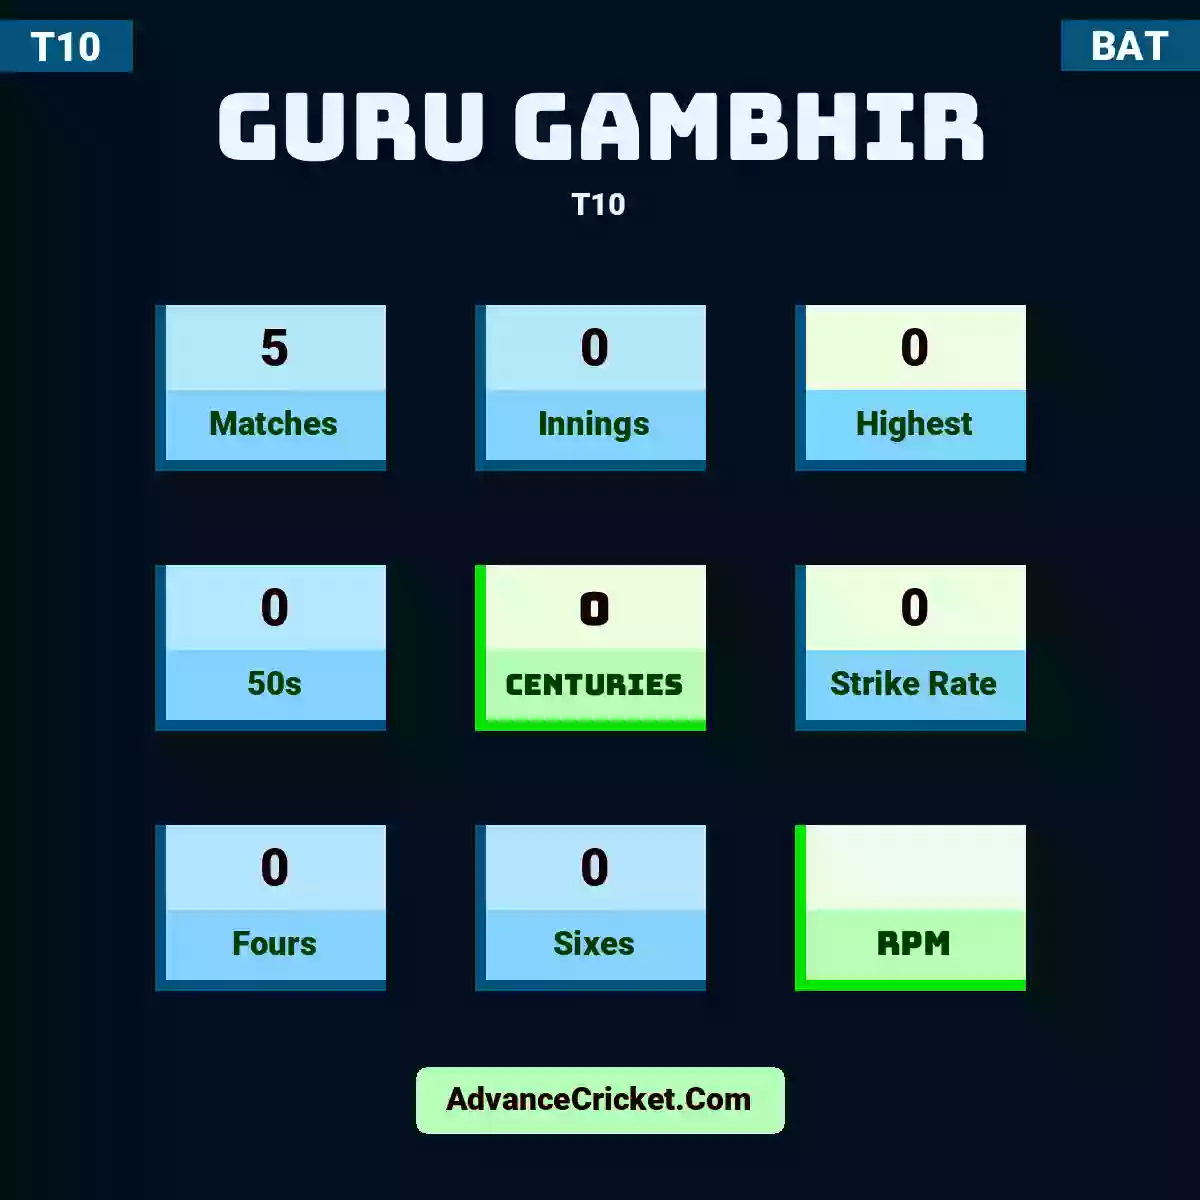 Guru Gambhir T10 , Guru Gambhir played 5 matches, scored 0 runs as highest, 0 half-centuries, and 0 centuries, with a strike rate of 0. Guru.Gambhir hit 0 fours and 0 sixes.